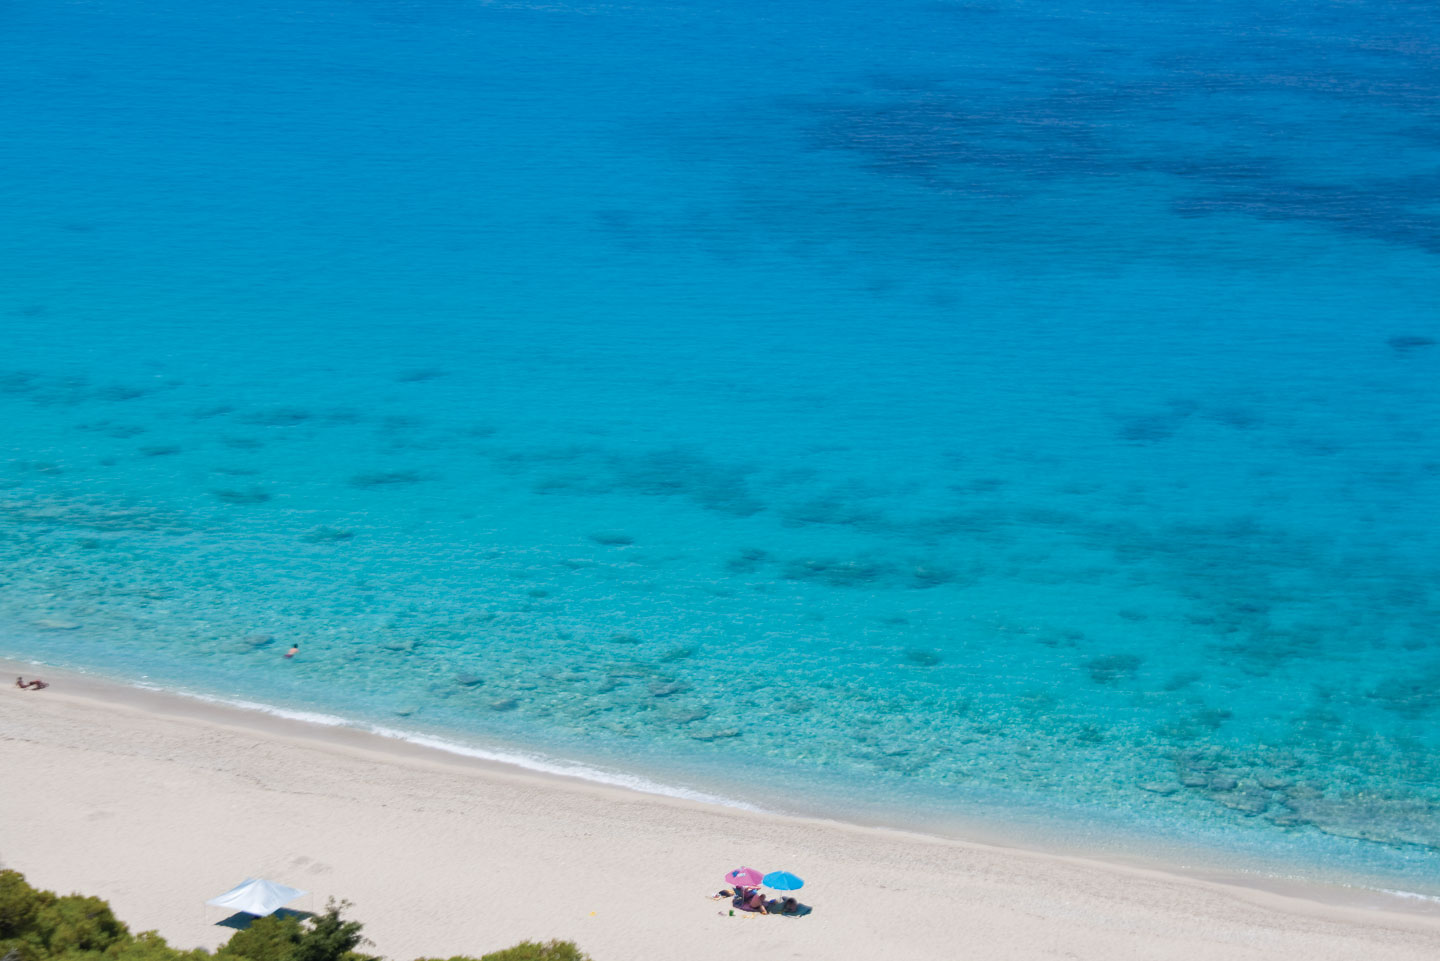 Pefkoulia beach in Lefkada | Best beaches in the Mediterranean